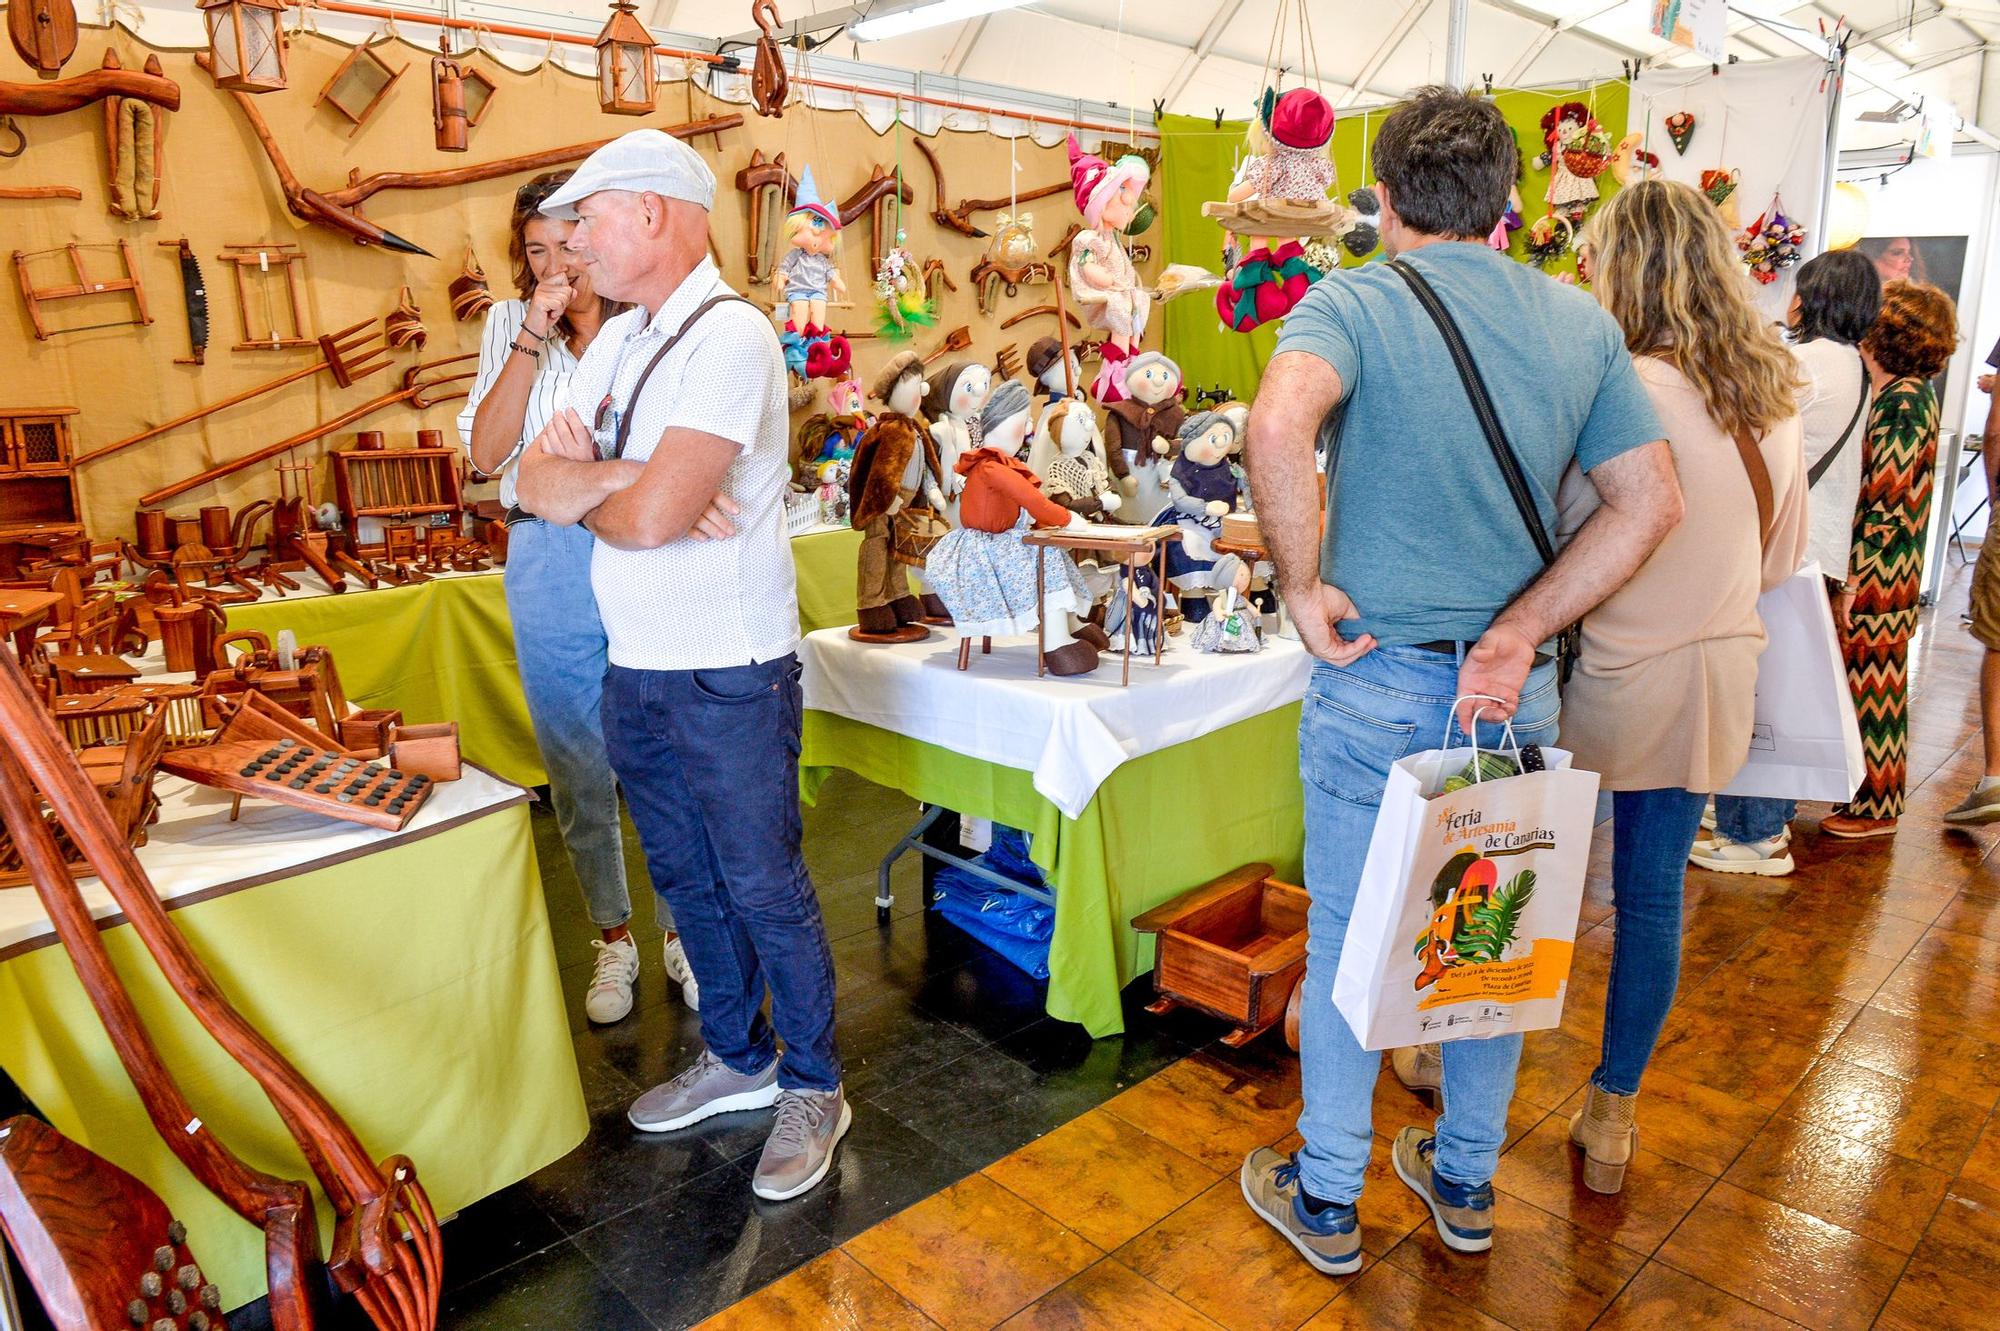 Feria de Artesanía de Canarias